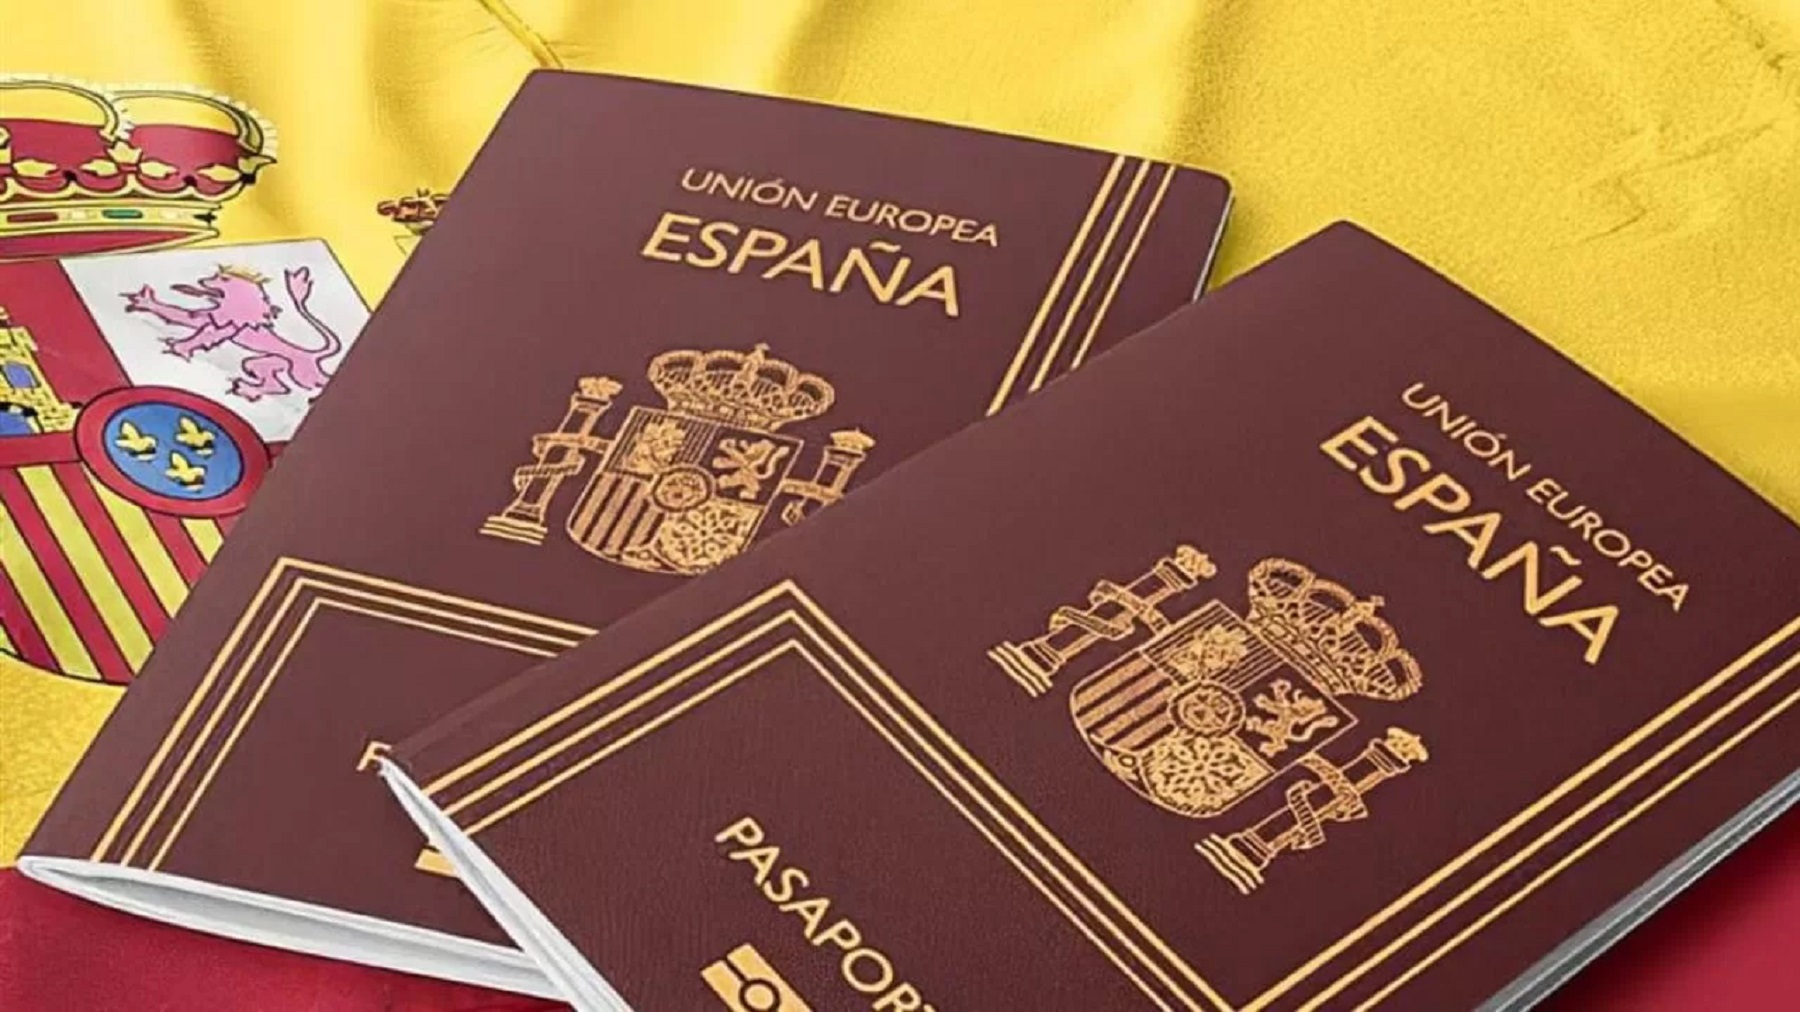 La ciudadanía española y su trámite no corren riesgos, a pesar de los conflictos diplomáticos.-